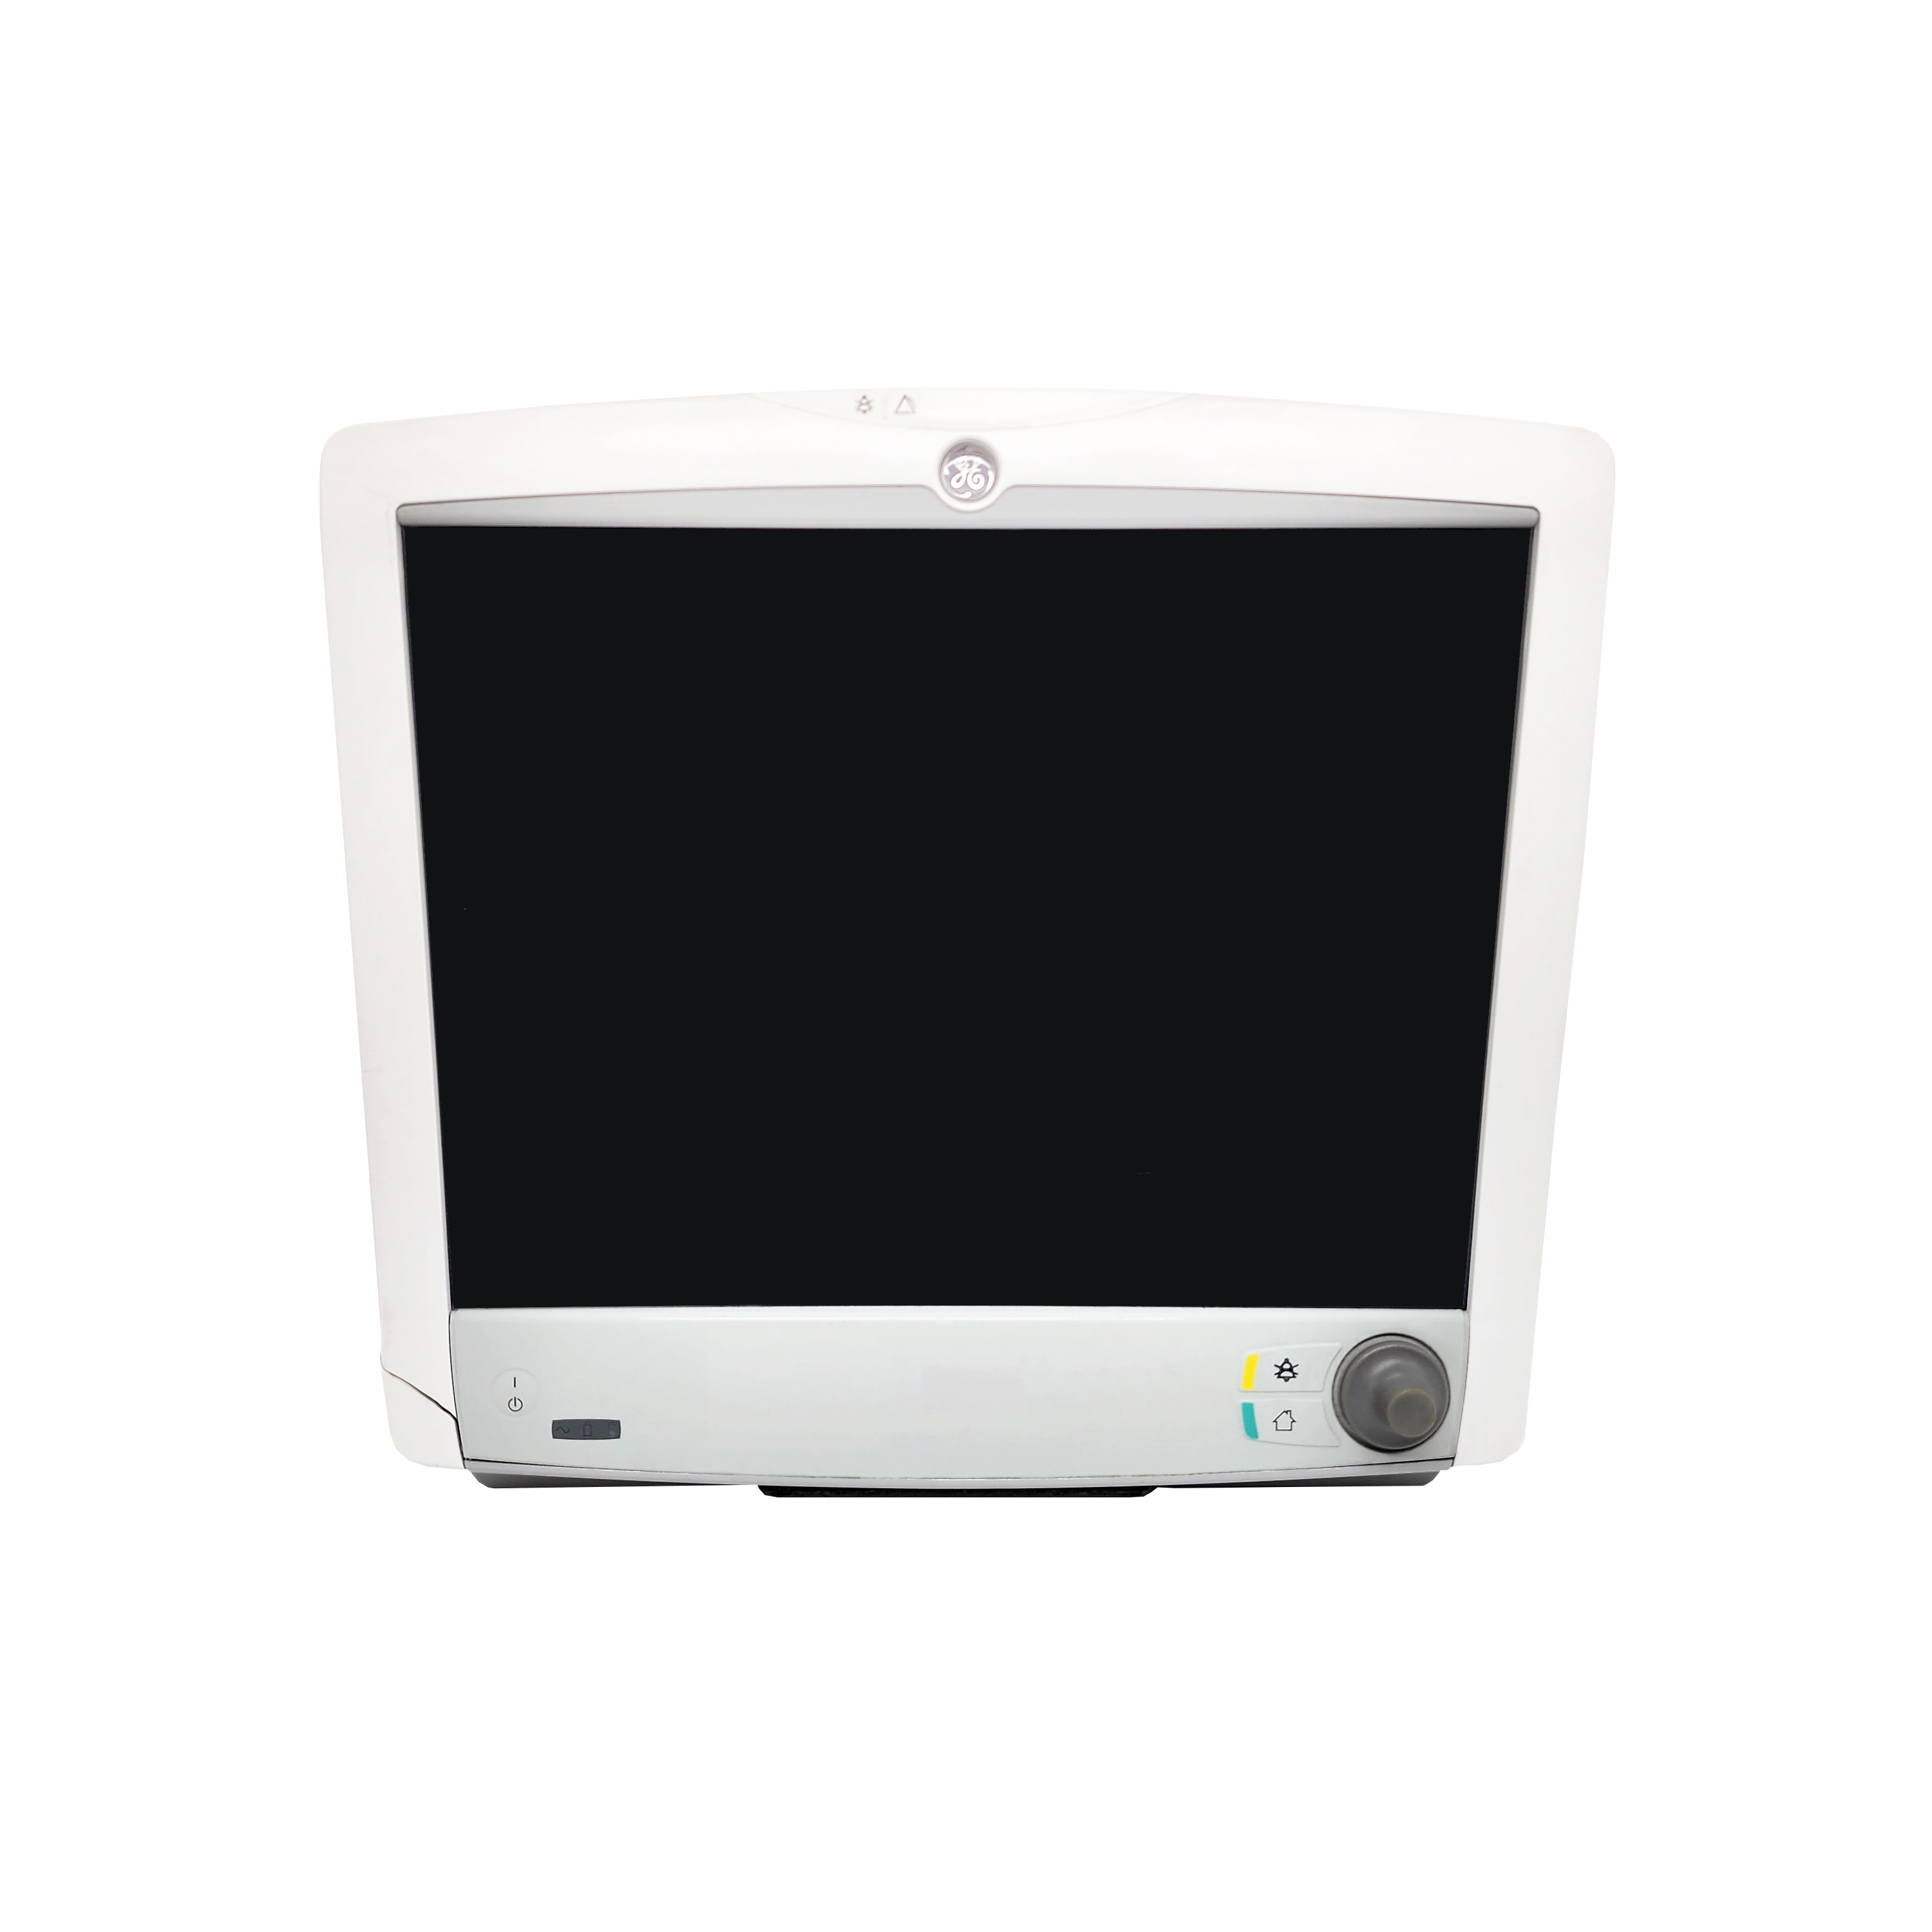 GE Carescape B450 Patient Monitor for Sale — Integris Equipment LLC